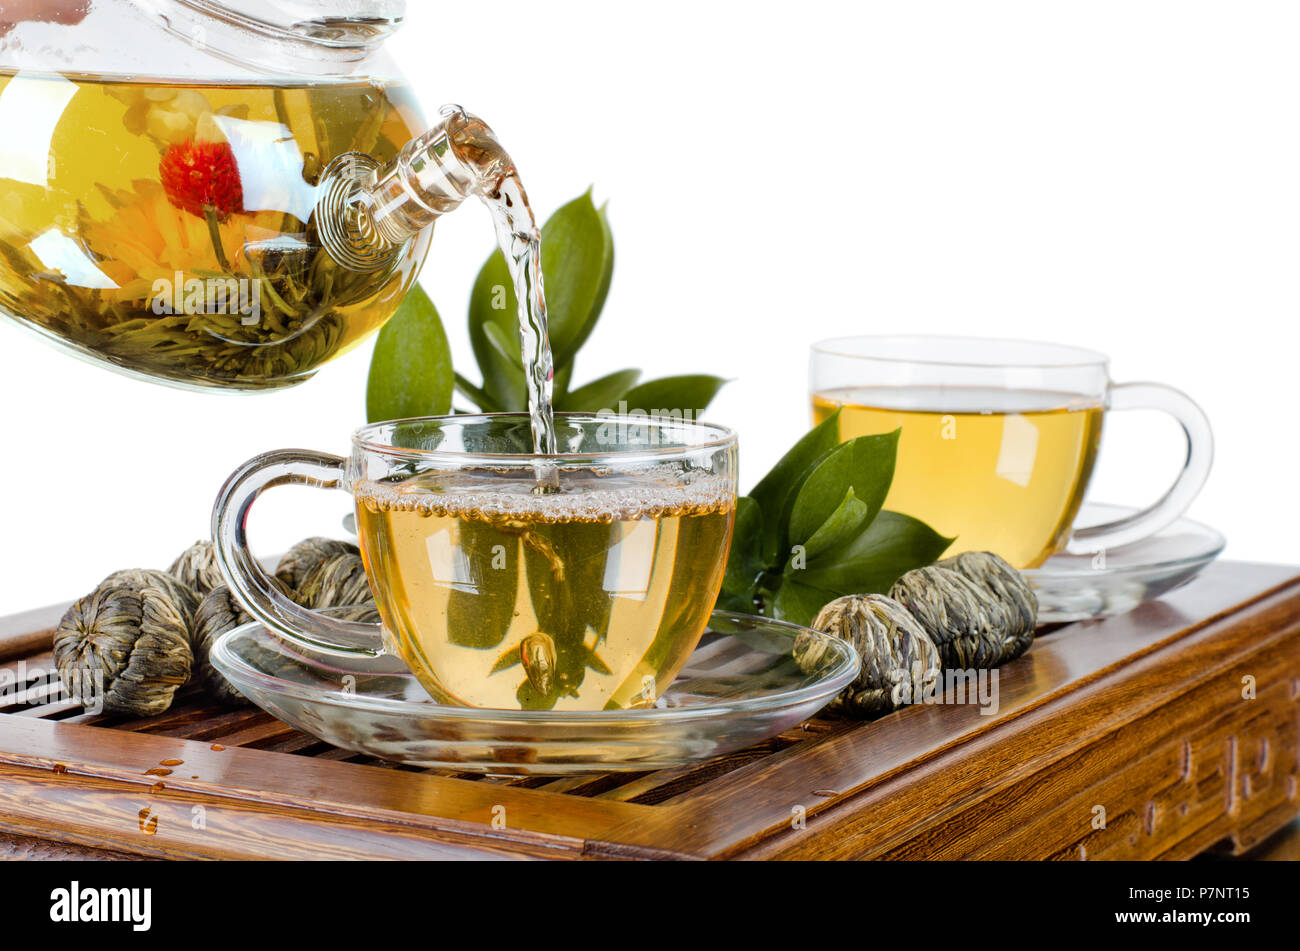 La vie toujours de la théière en verre tasse thé vert en débit sur fond blanc, isolé, cérémonie du thé Banque D'Images